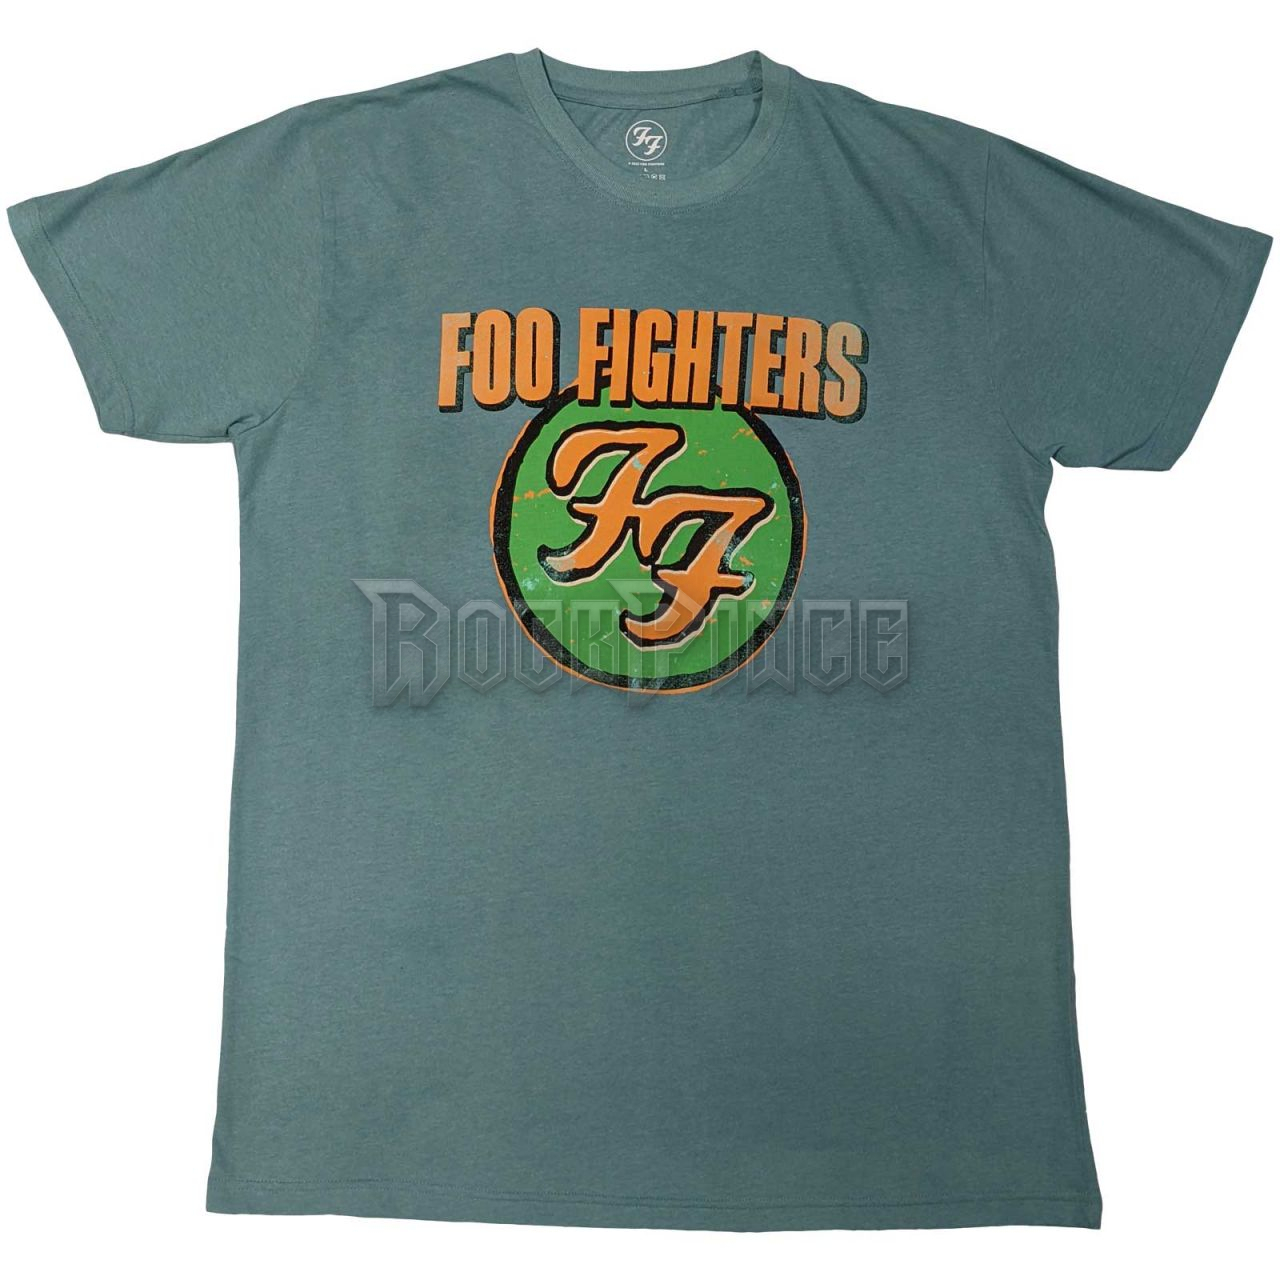 Foo Fighters - Graff - unisex póló (környezetbarát) - FOOTS38MBL